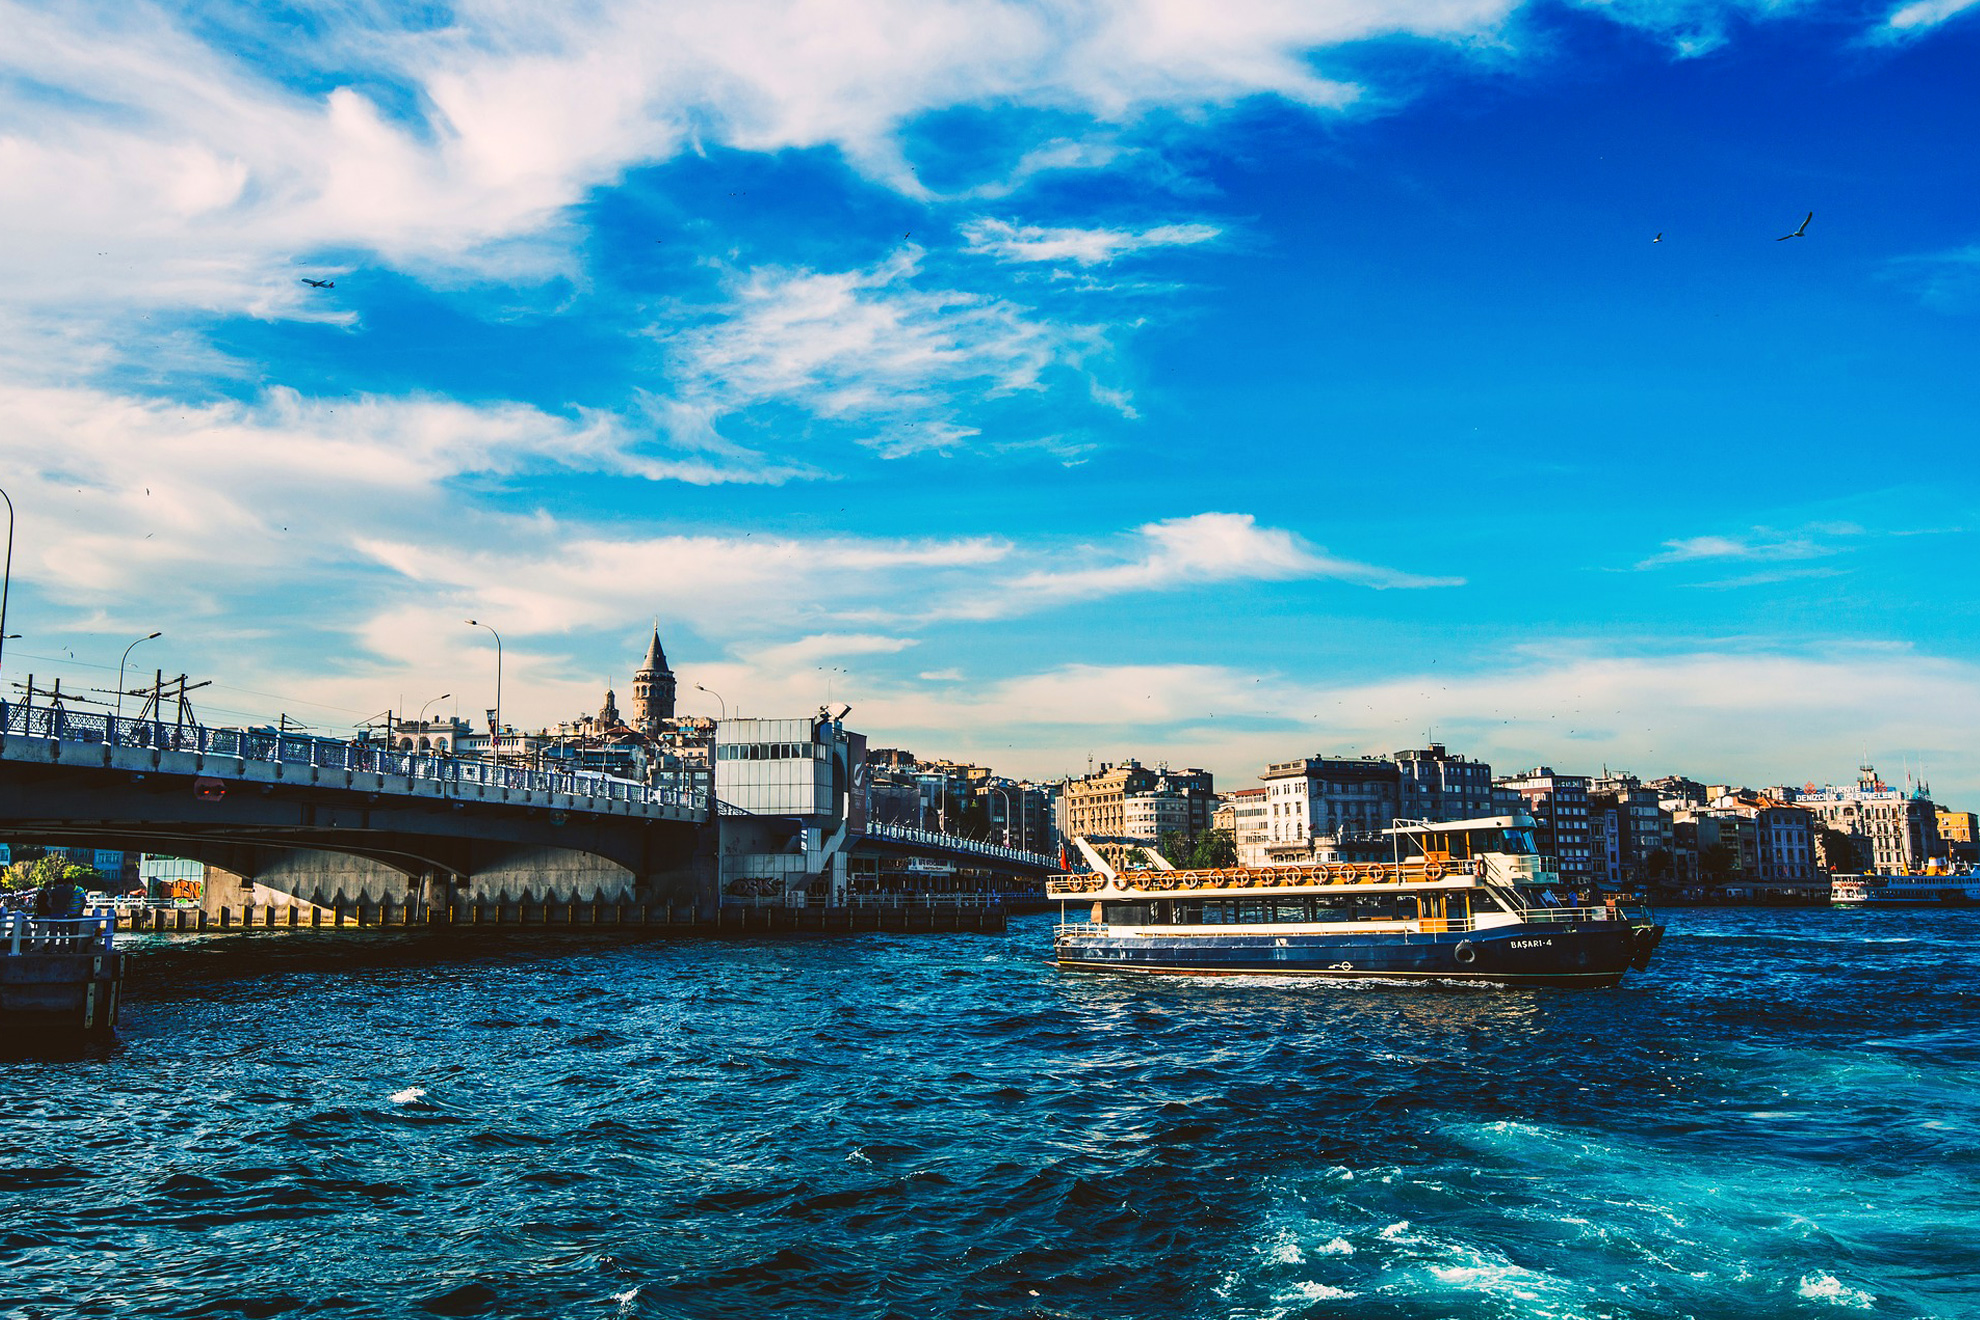  Истанбул - величието на една империя - Круиз по Босфора, Истанбул, Турция - Bosphorus cruise, Istanbul, Turkey